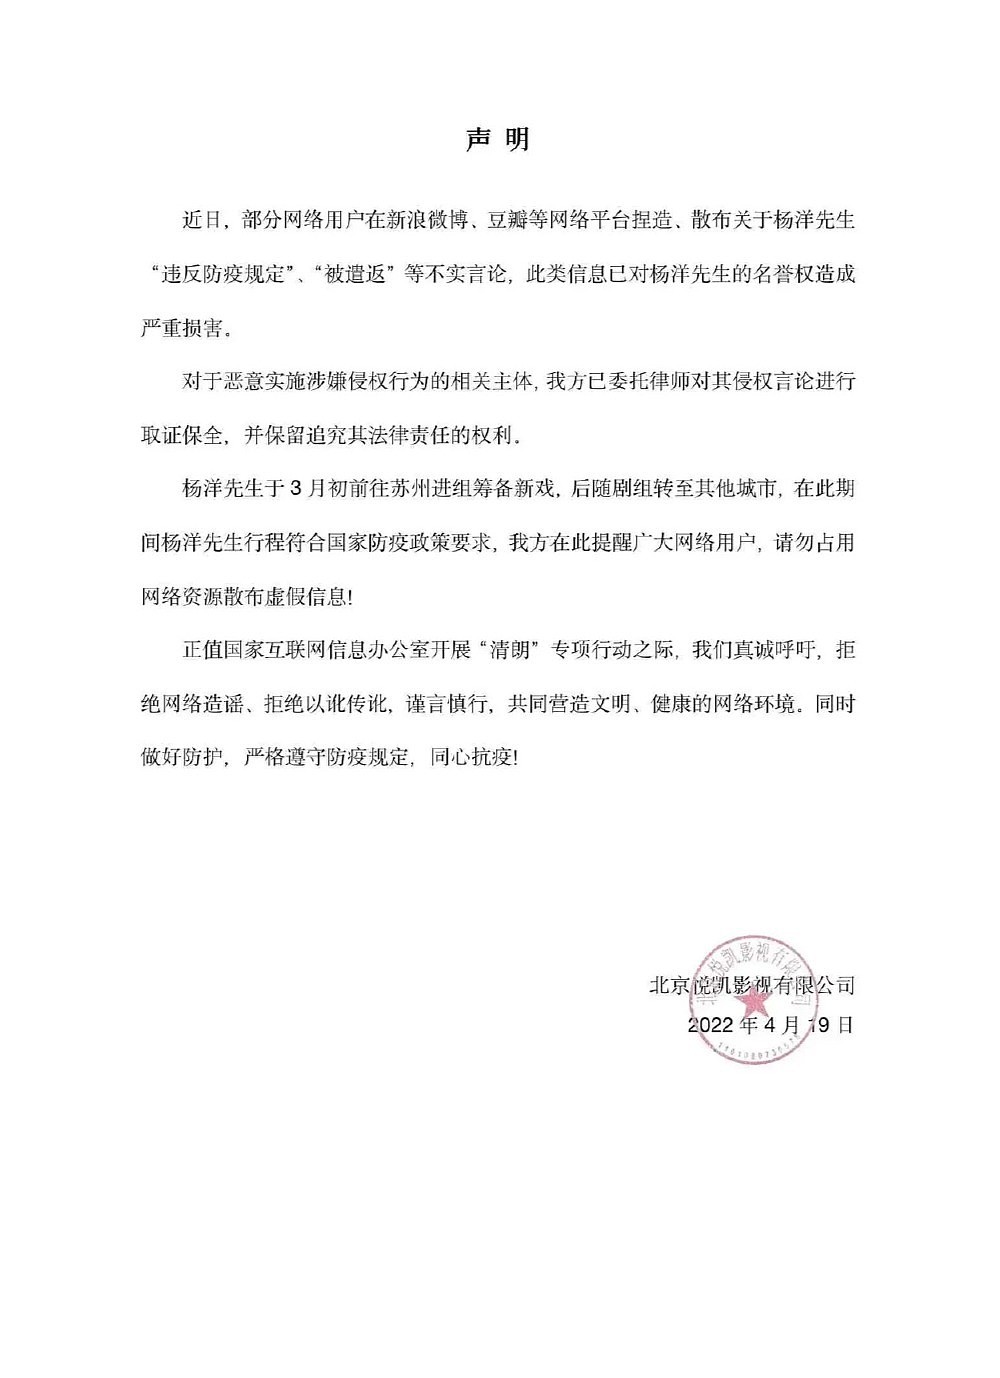 杨洋方发声明否认违反防疫规定 已将造谣者诉至法院